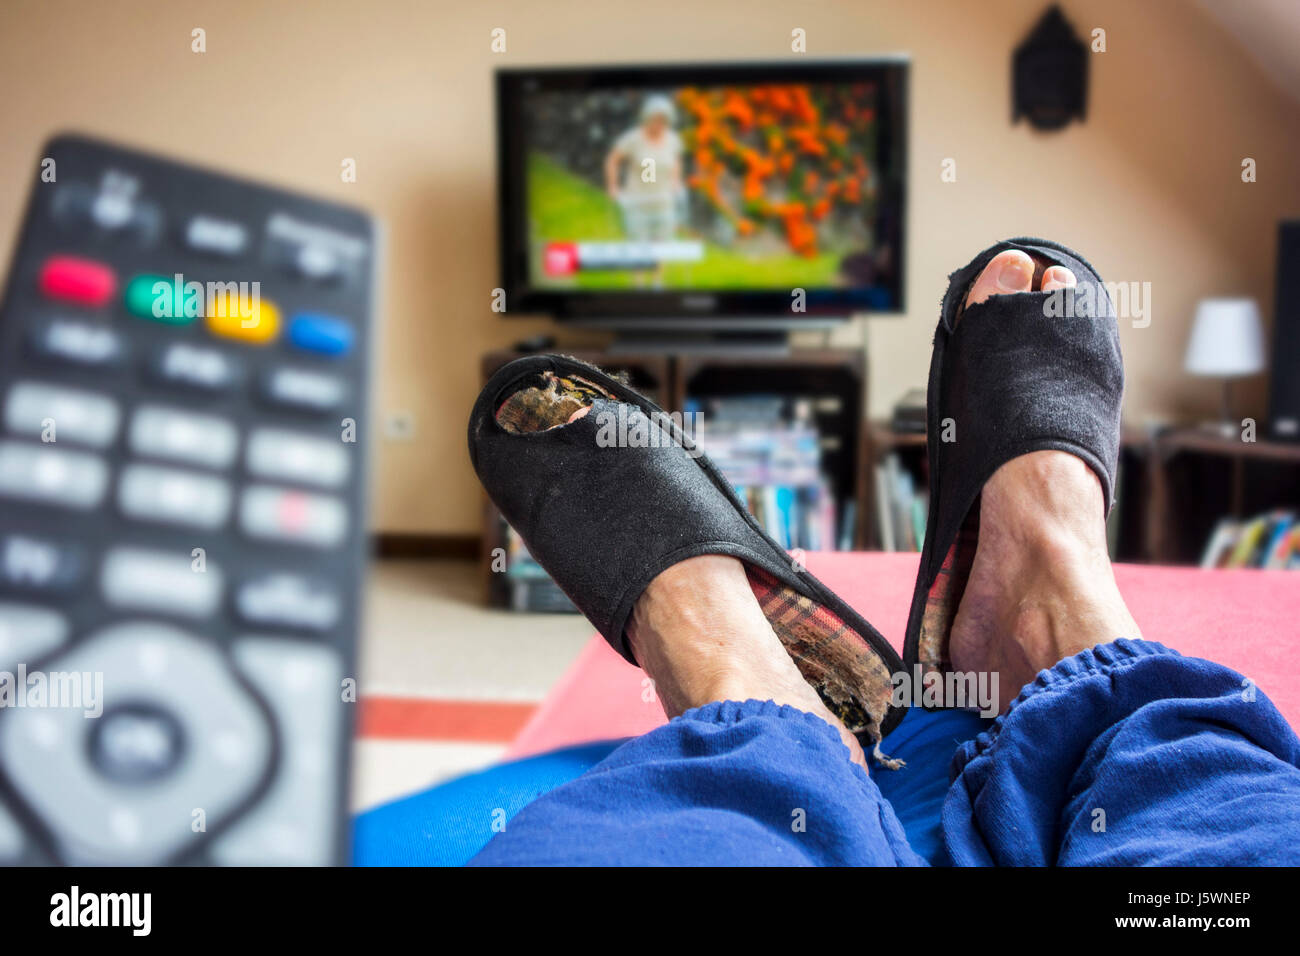 Controllo remoto e couch potato, pigro nella comoda poltrona indossando indossato pantofole con grande dita tramite incollaggio e guardare la televisione in salotto Foto Stock